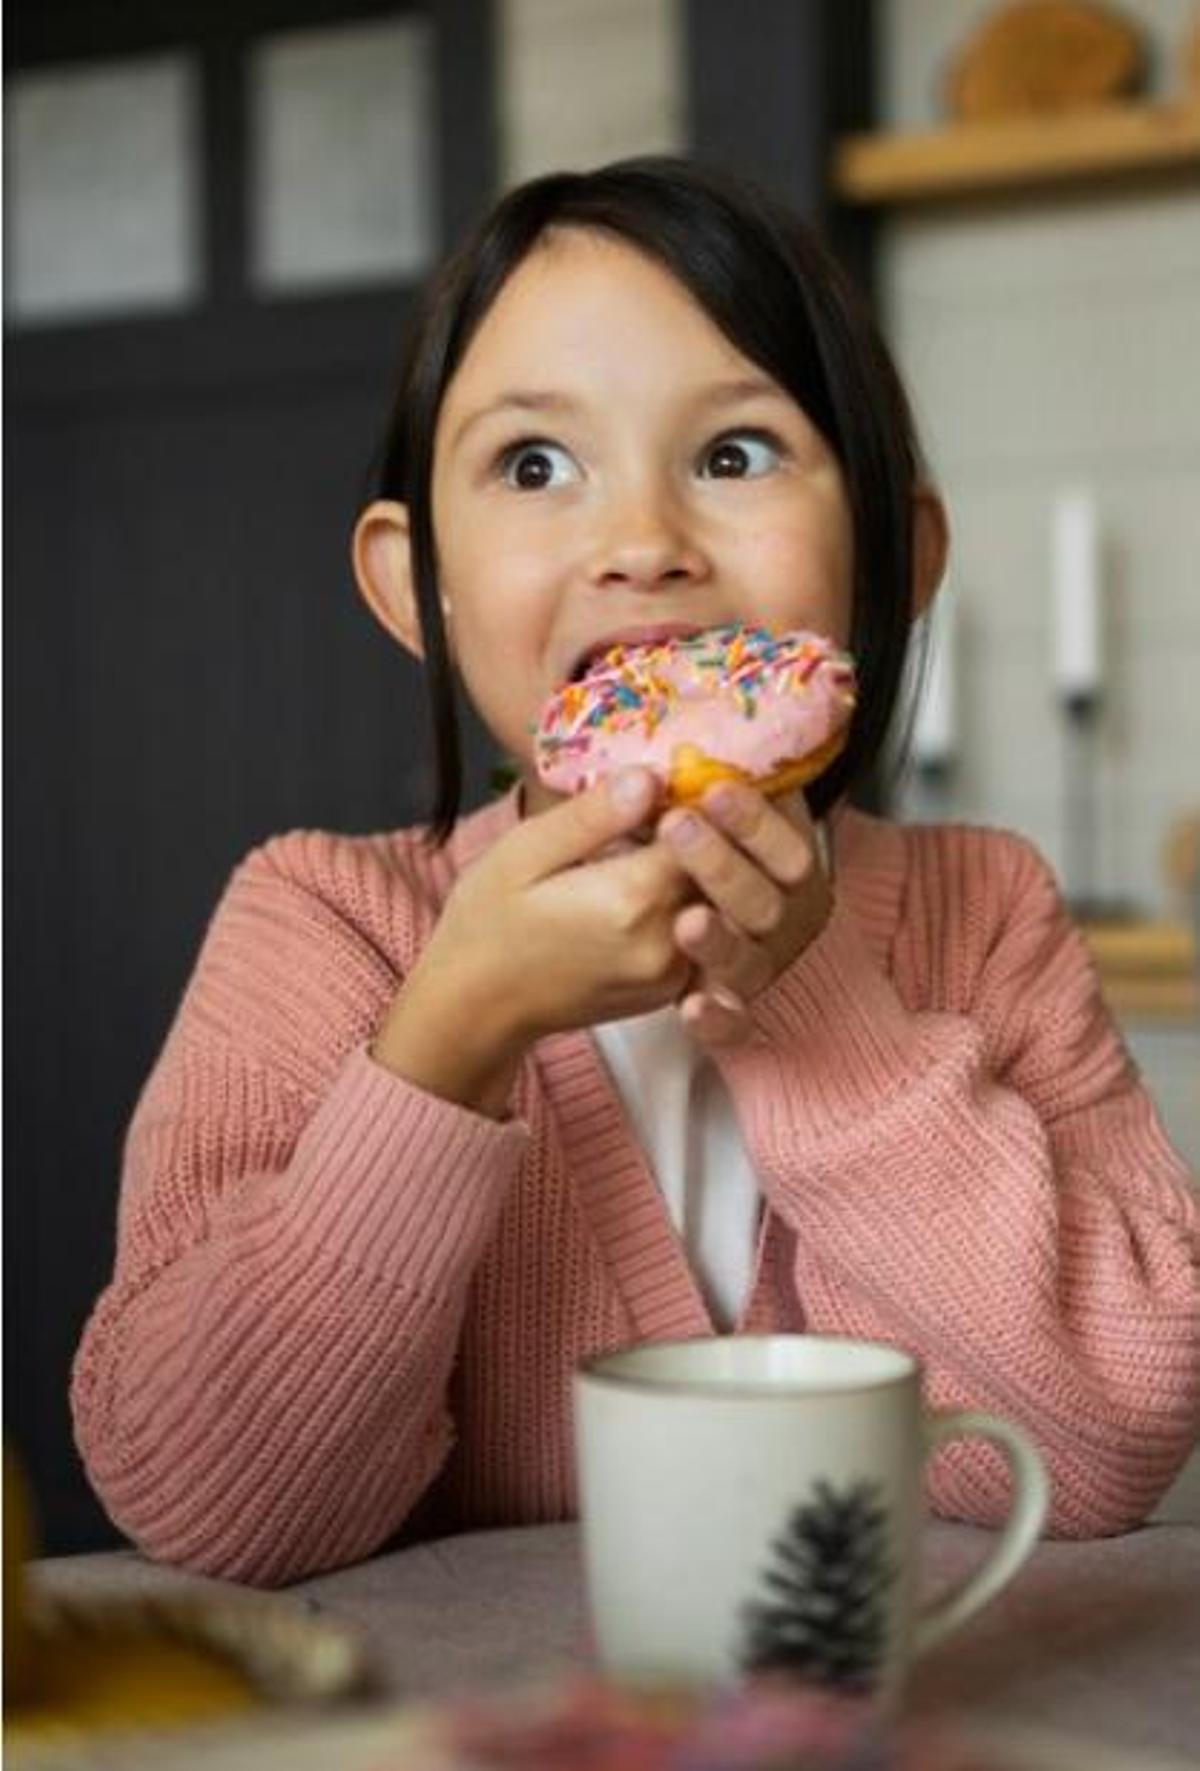 Menjar sucre, aliments processats i ultraprocessats, pot fer que els més petits pateixin diabetis